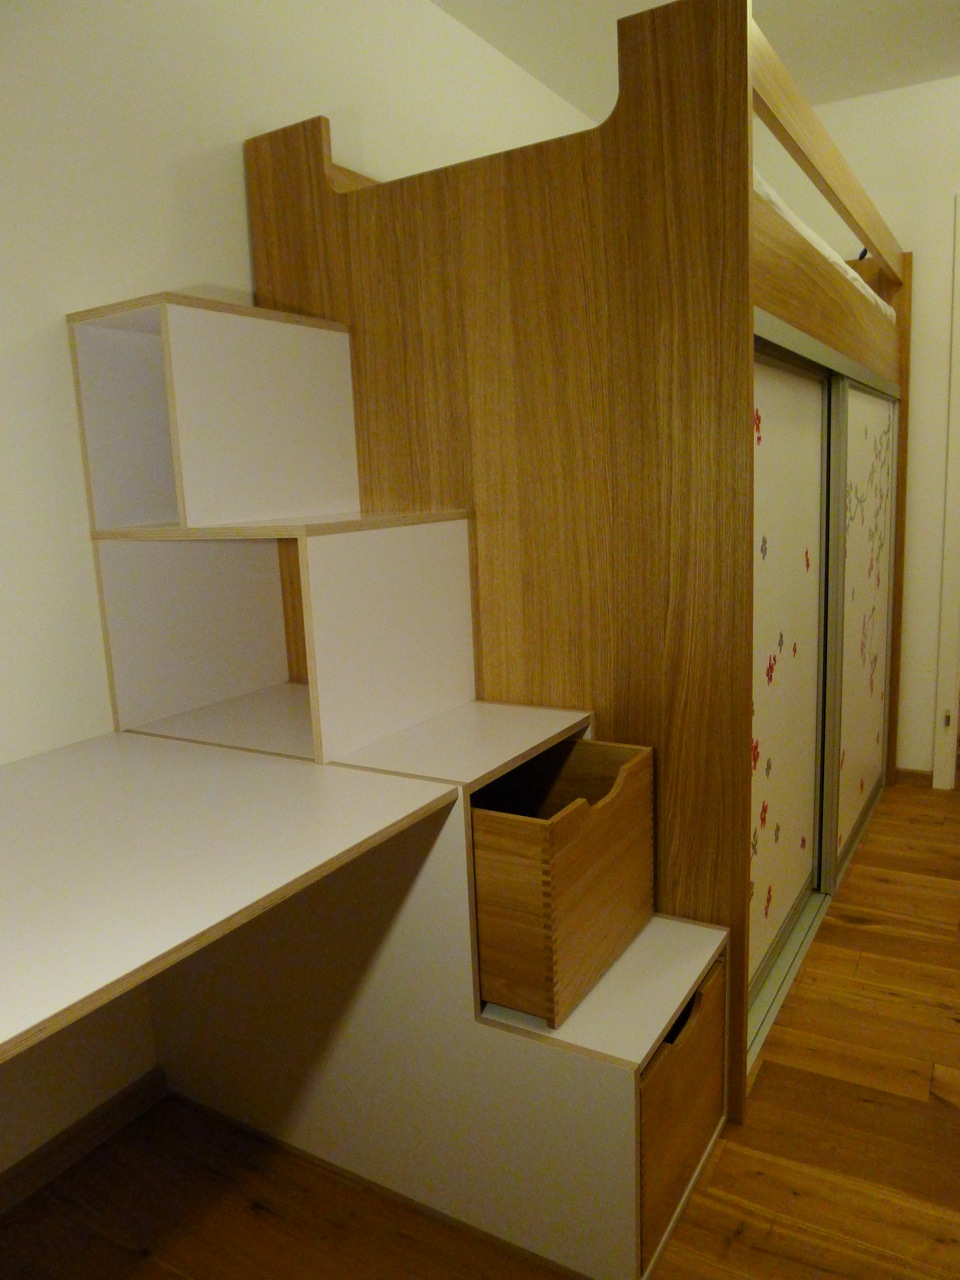 Kinderzimmer mit Hochbett, Schrank + Schreibtisch in Eiche und weißem Multiplex